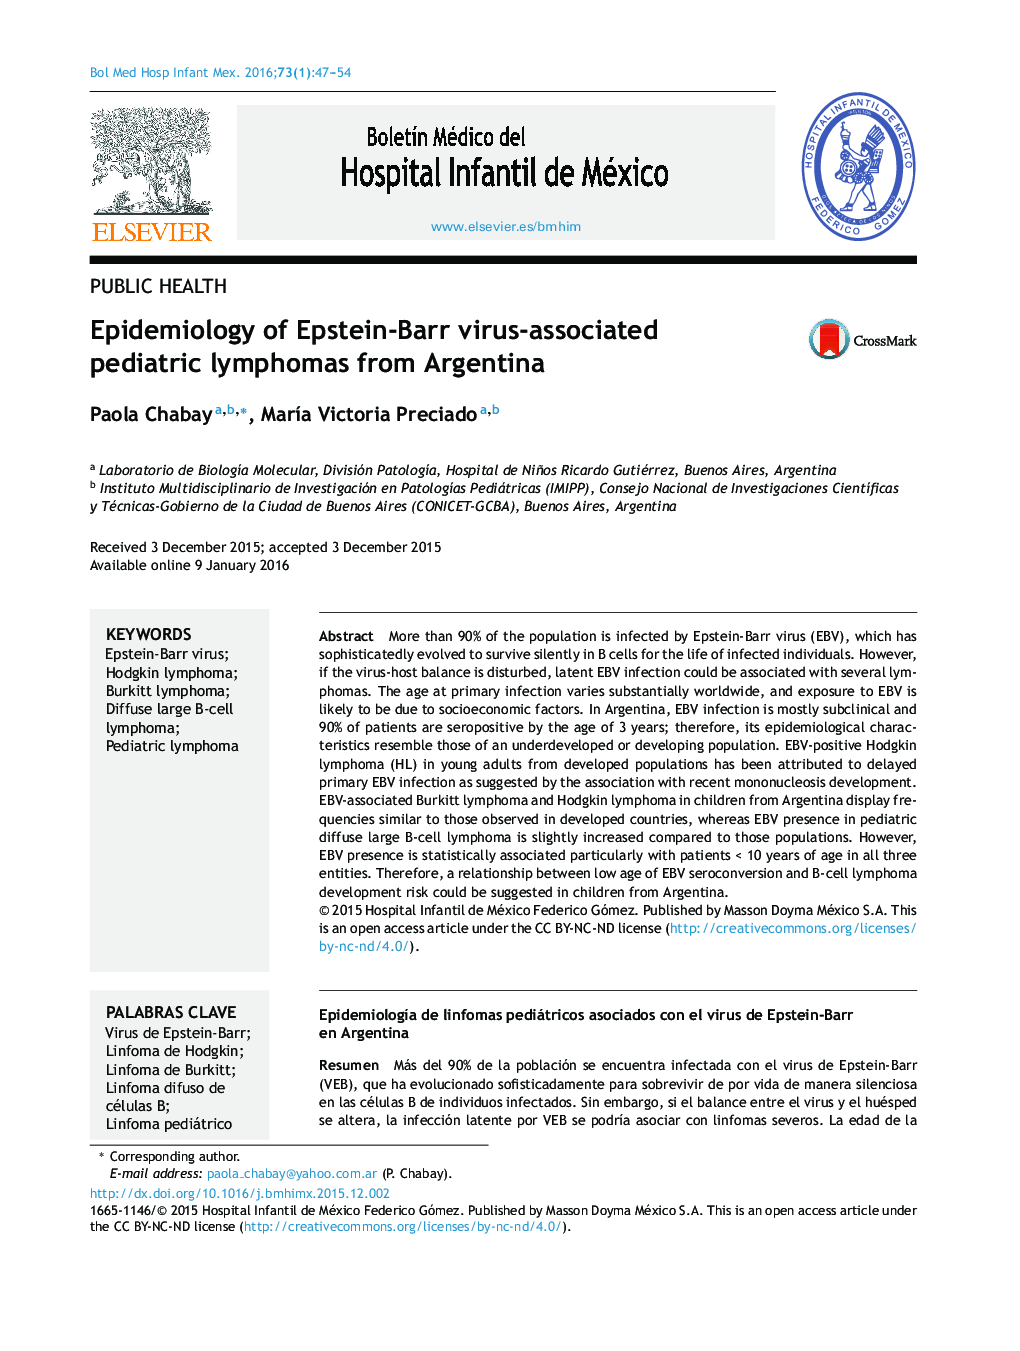 اپیدمیولوژی لنفوم های اطفال مرتبط با ویروس اپشتین _ بار از آرژانتین